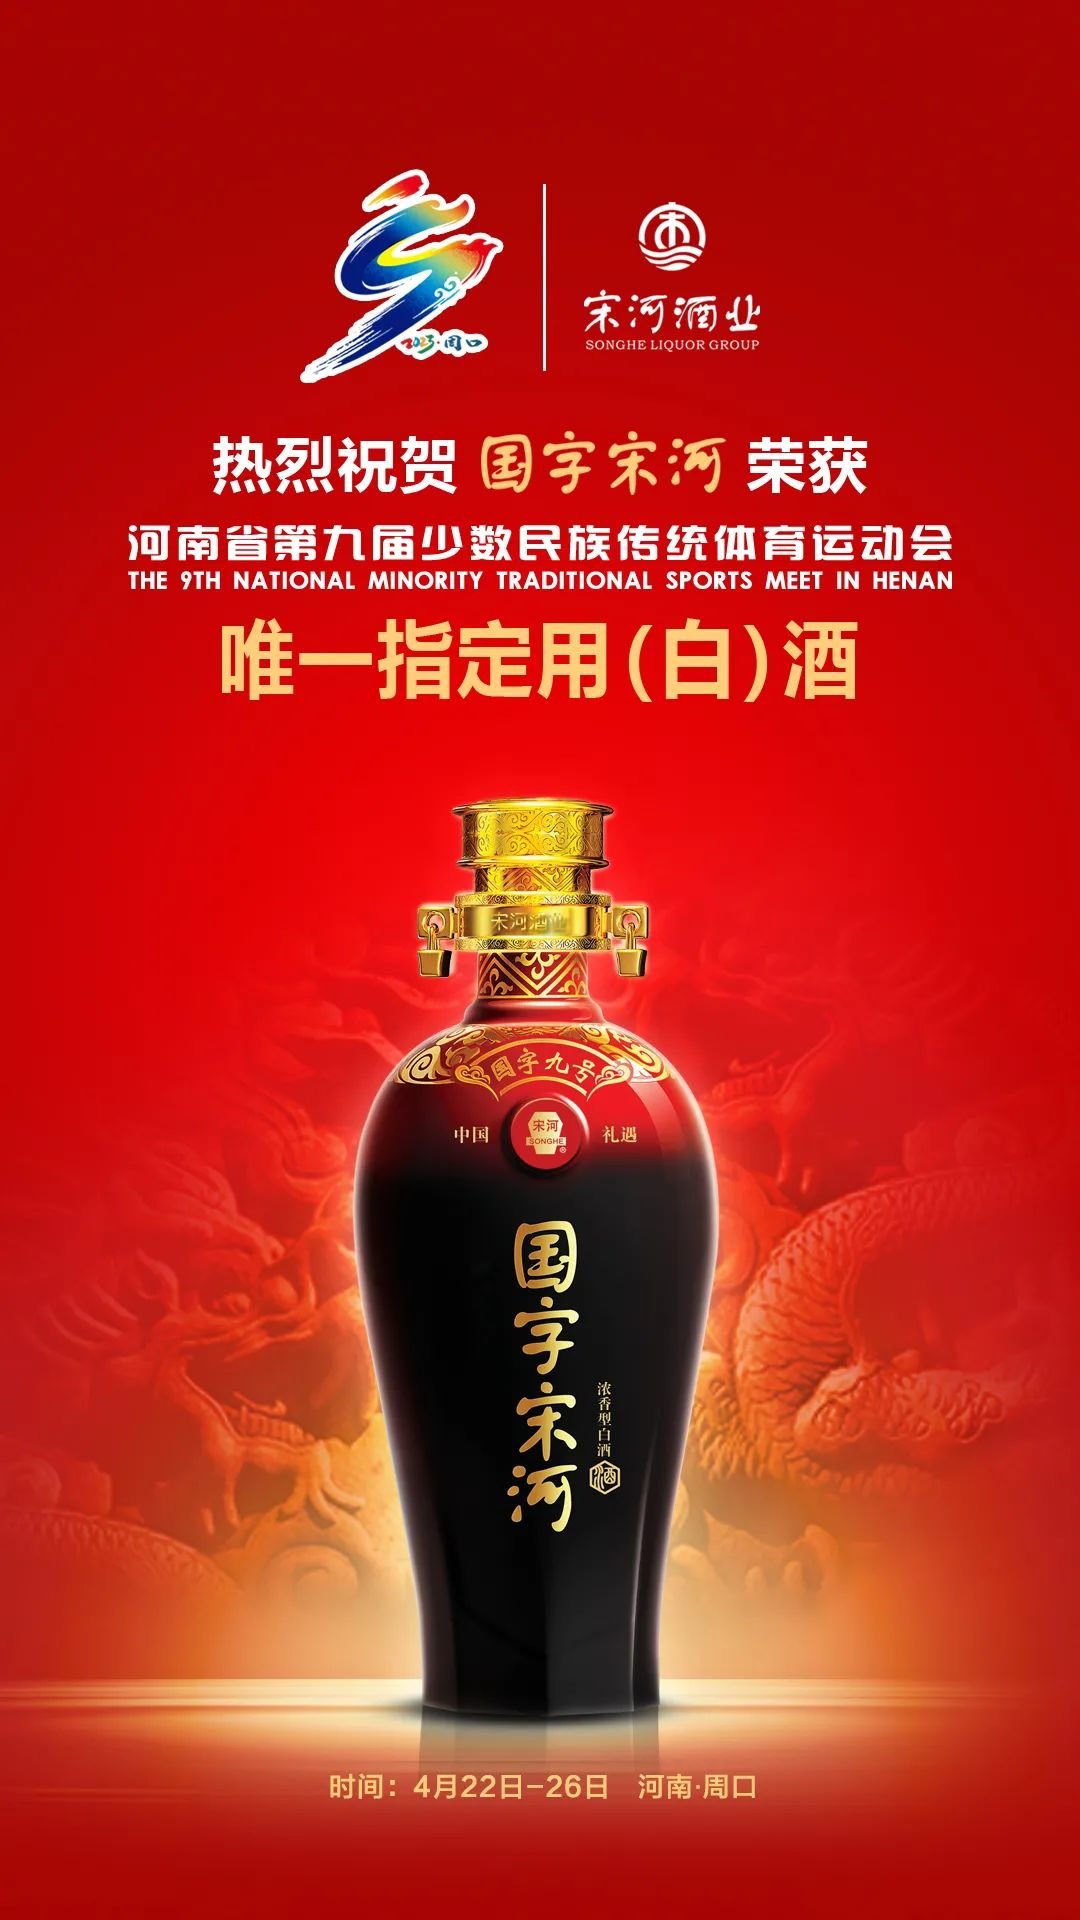 国字宋河被指定为第九届全省民族运动会唯一用(白)酒